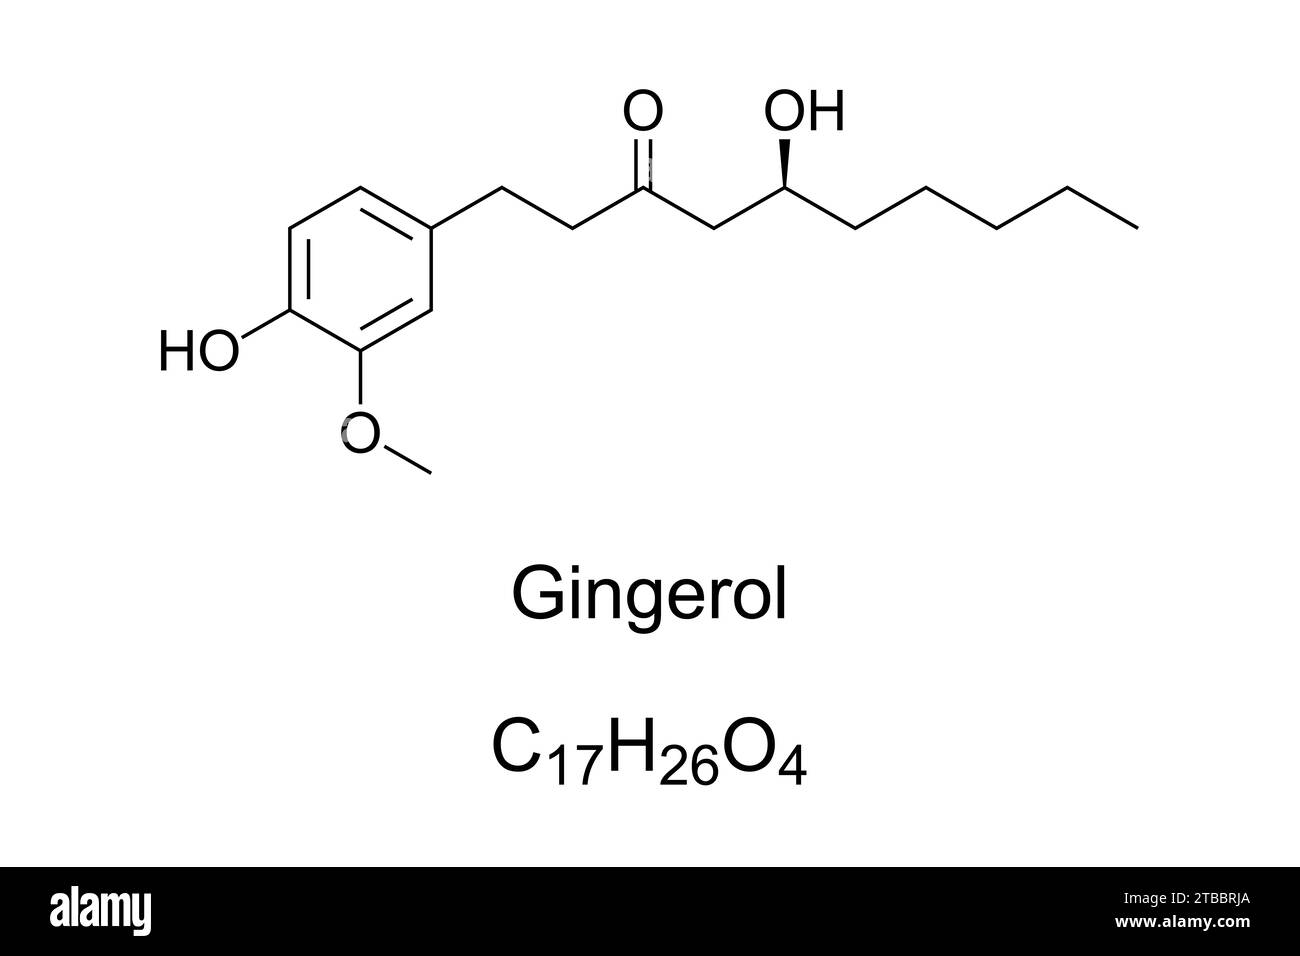 Gingérol, formule chimique et structure. Composé phénolique phytochimique trouvé dans le gingembre frais, activant les récepteurs de chaleur sur la langue. Banque D'Images